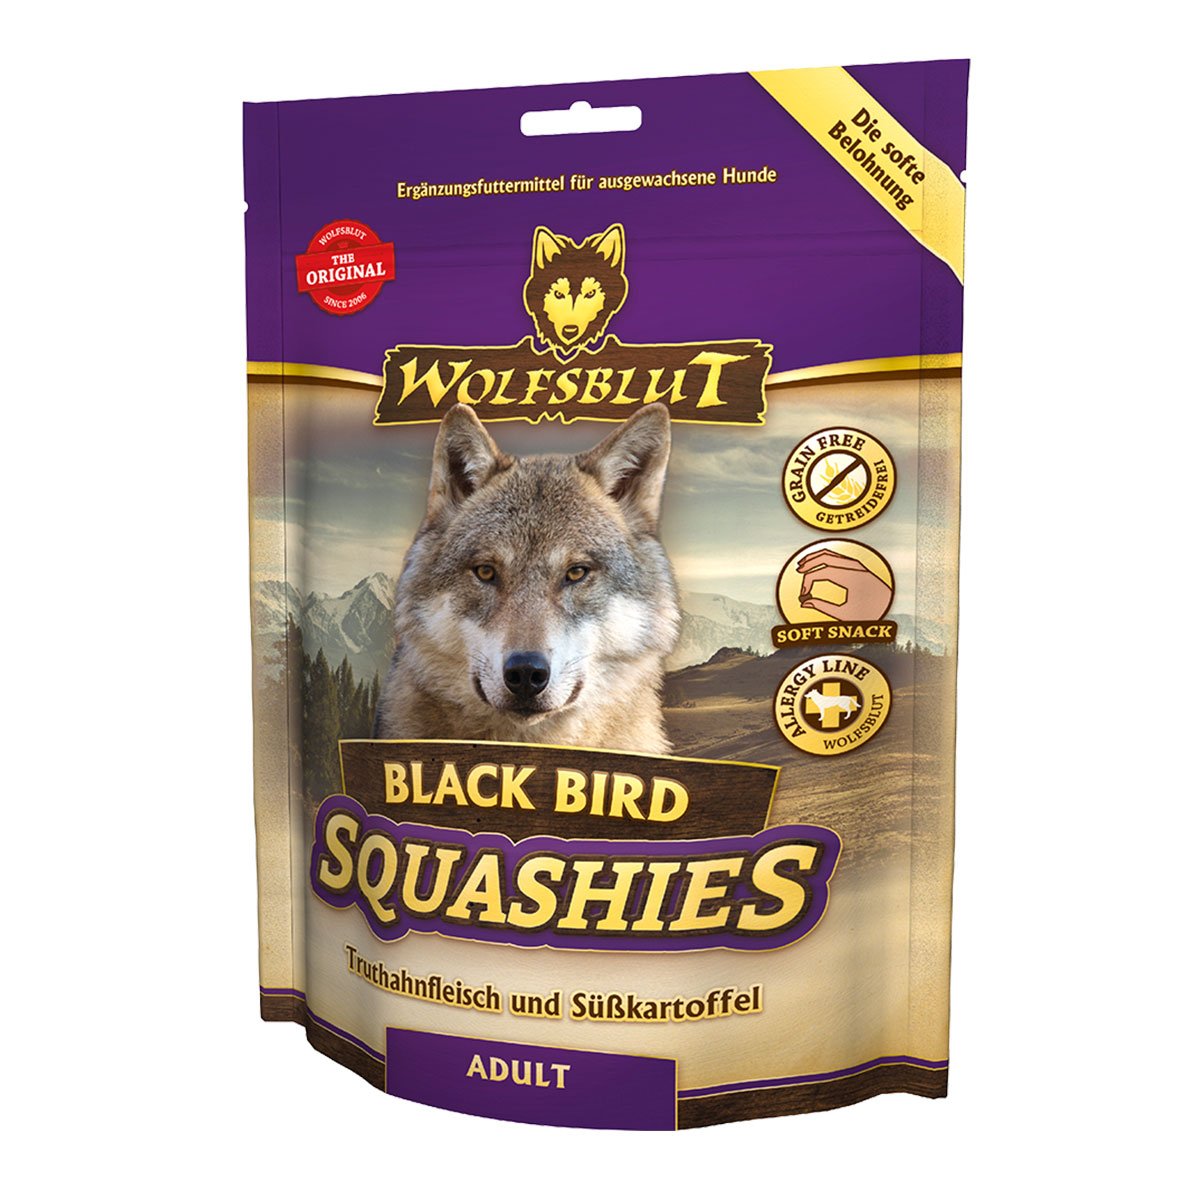 Wolfsblut Squashies Black Bird 6x300g